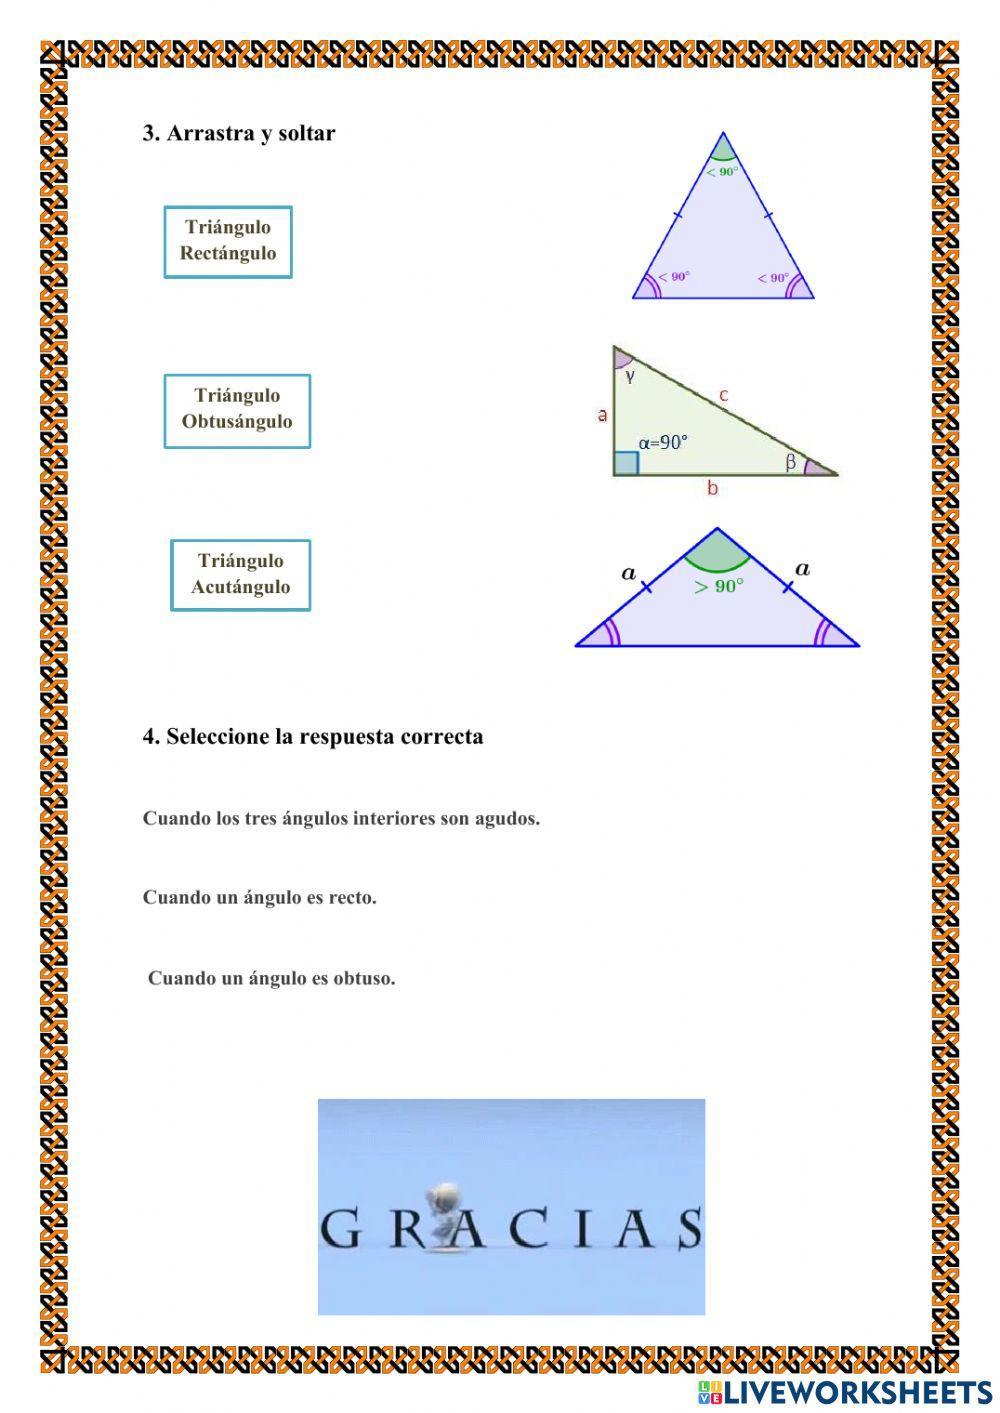 Clasificación del triángulo por sus lados y ángulos